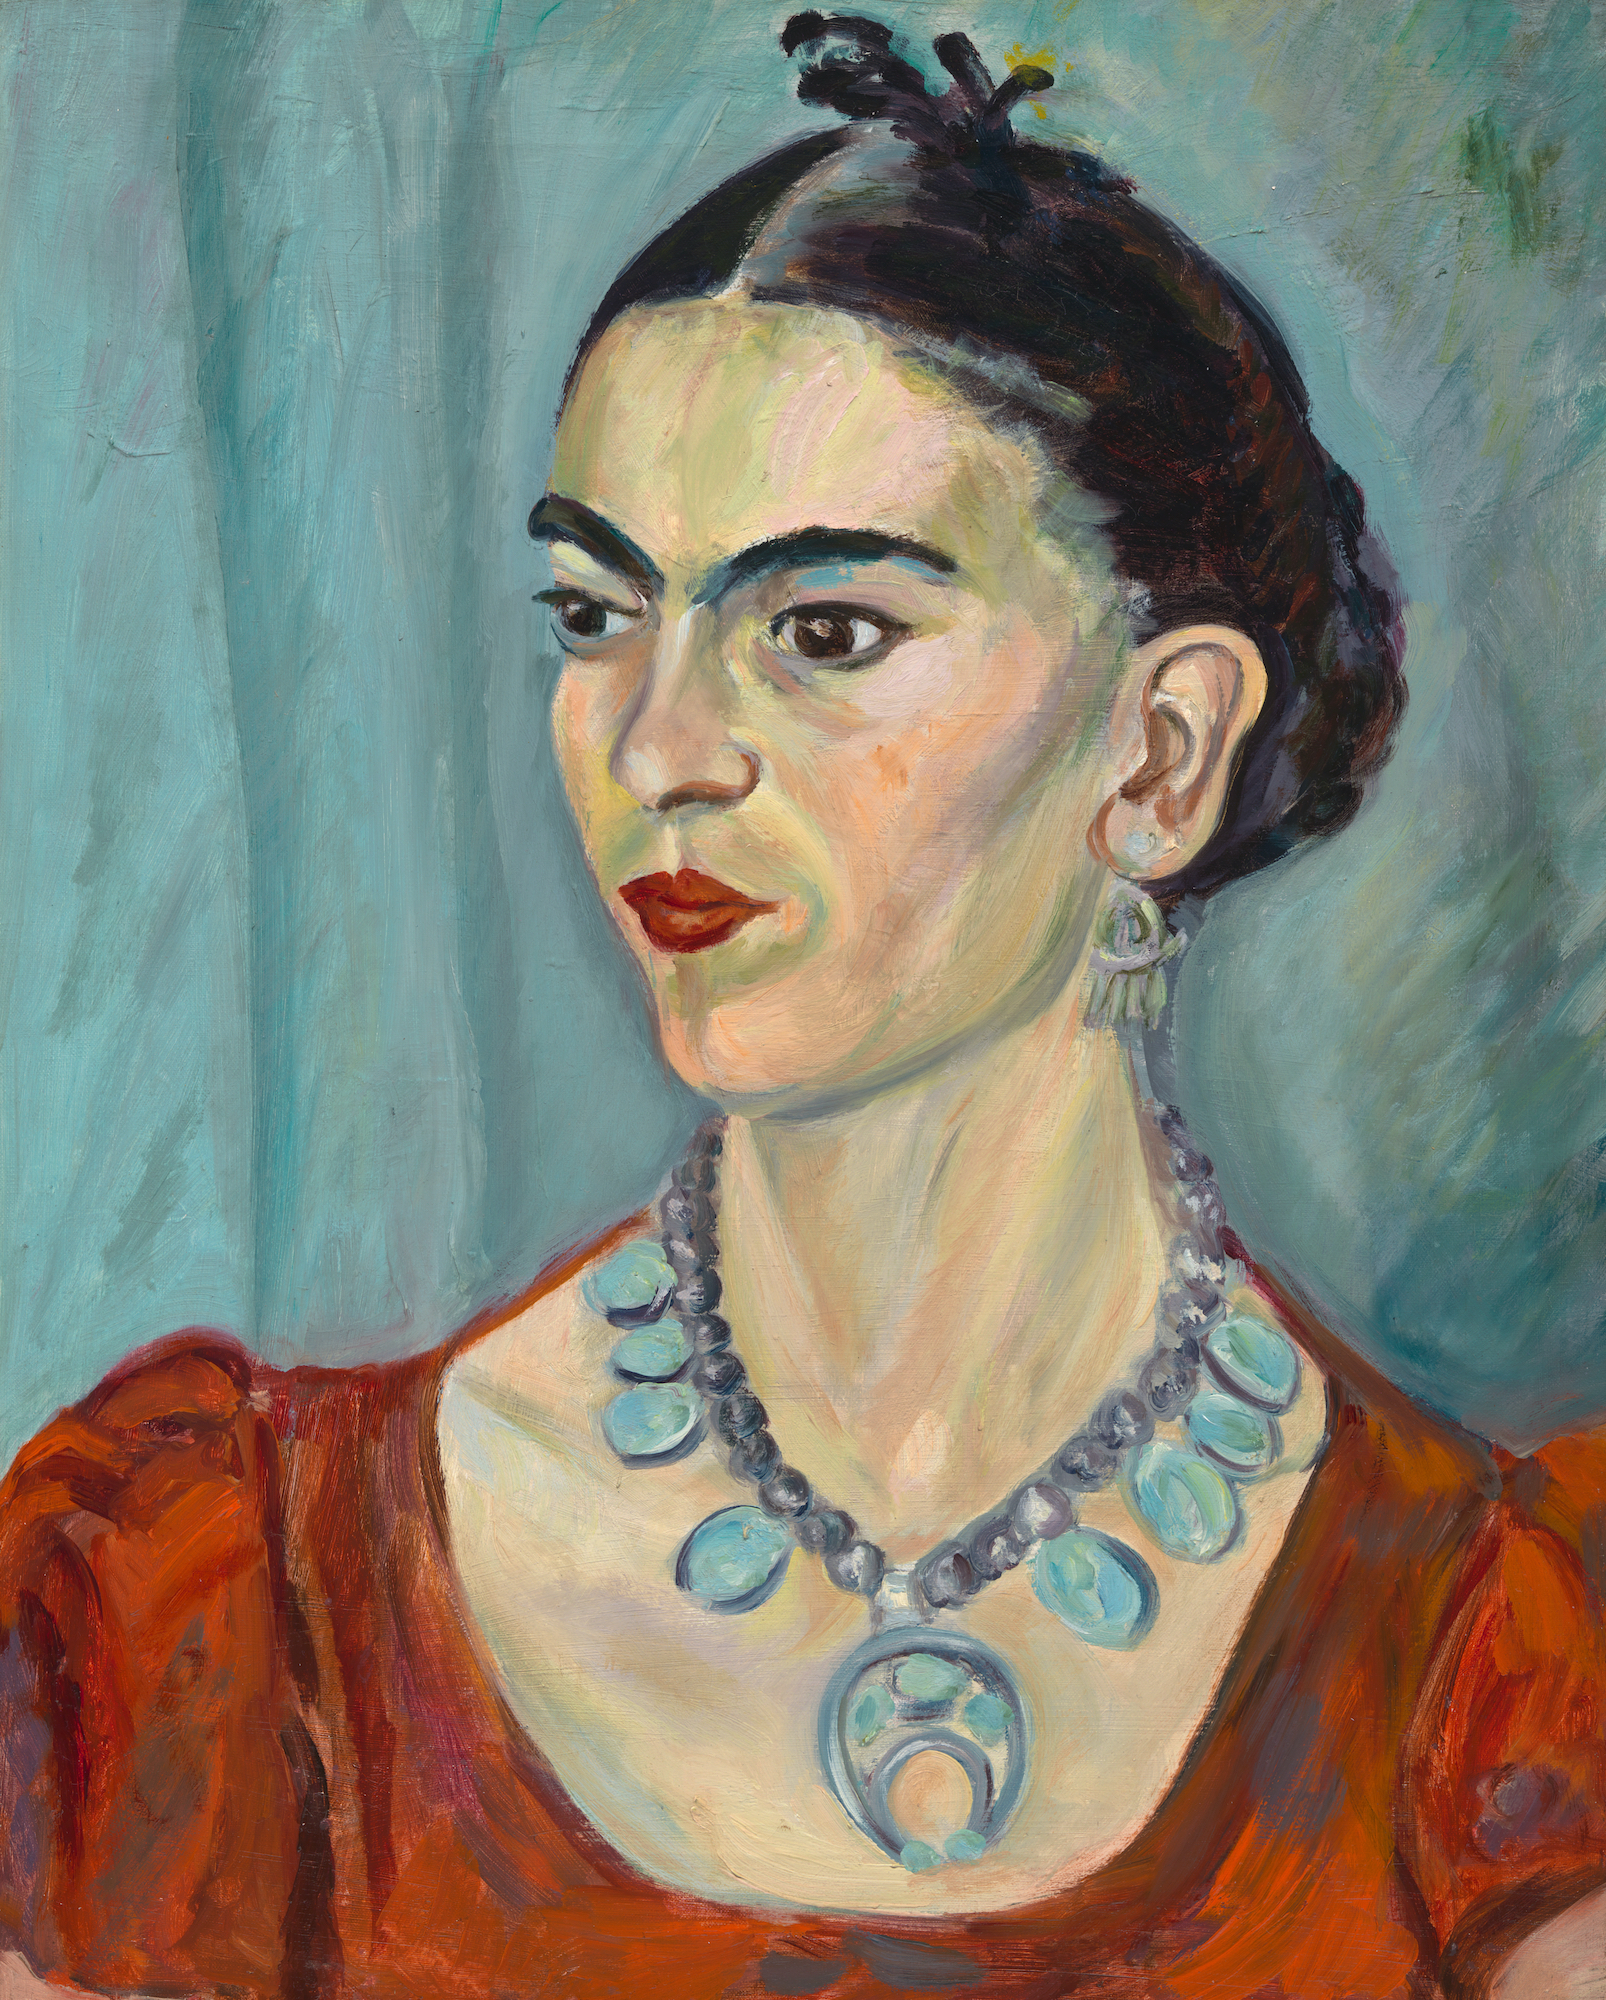 玛格达 帕赫 - 1884 - 1950